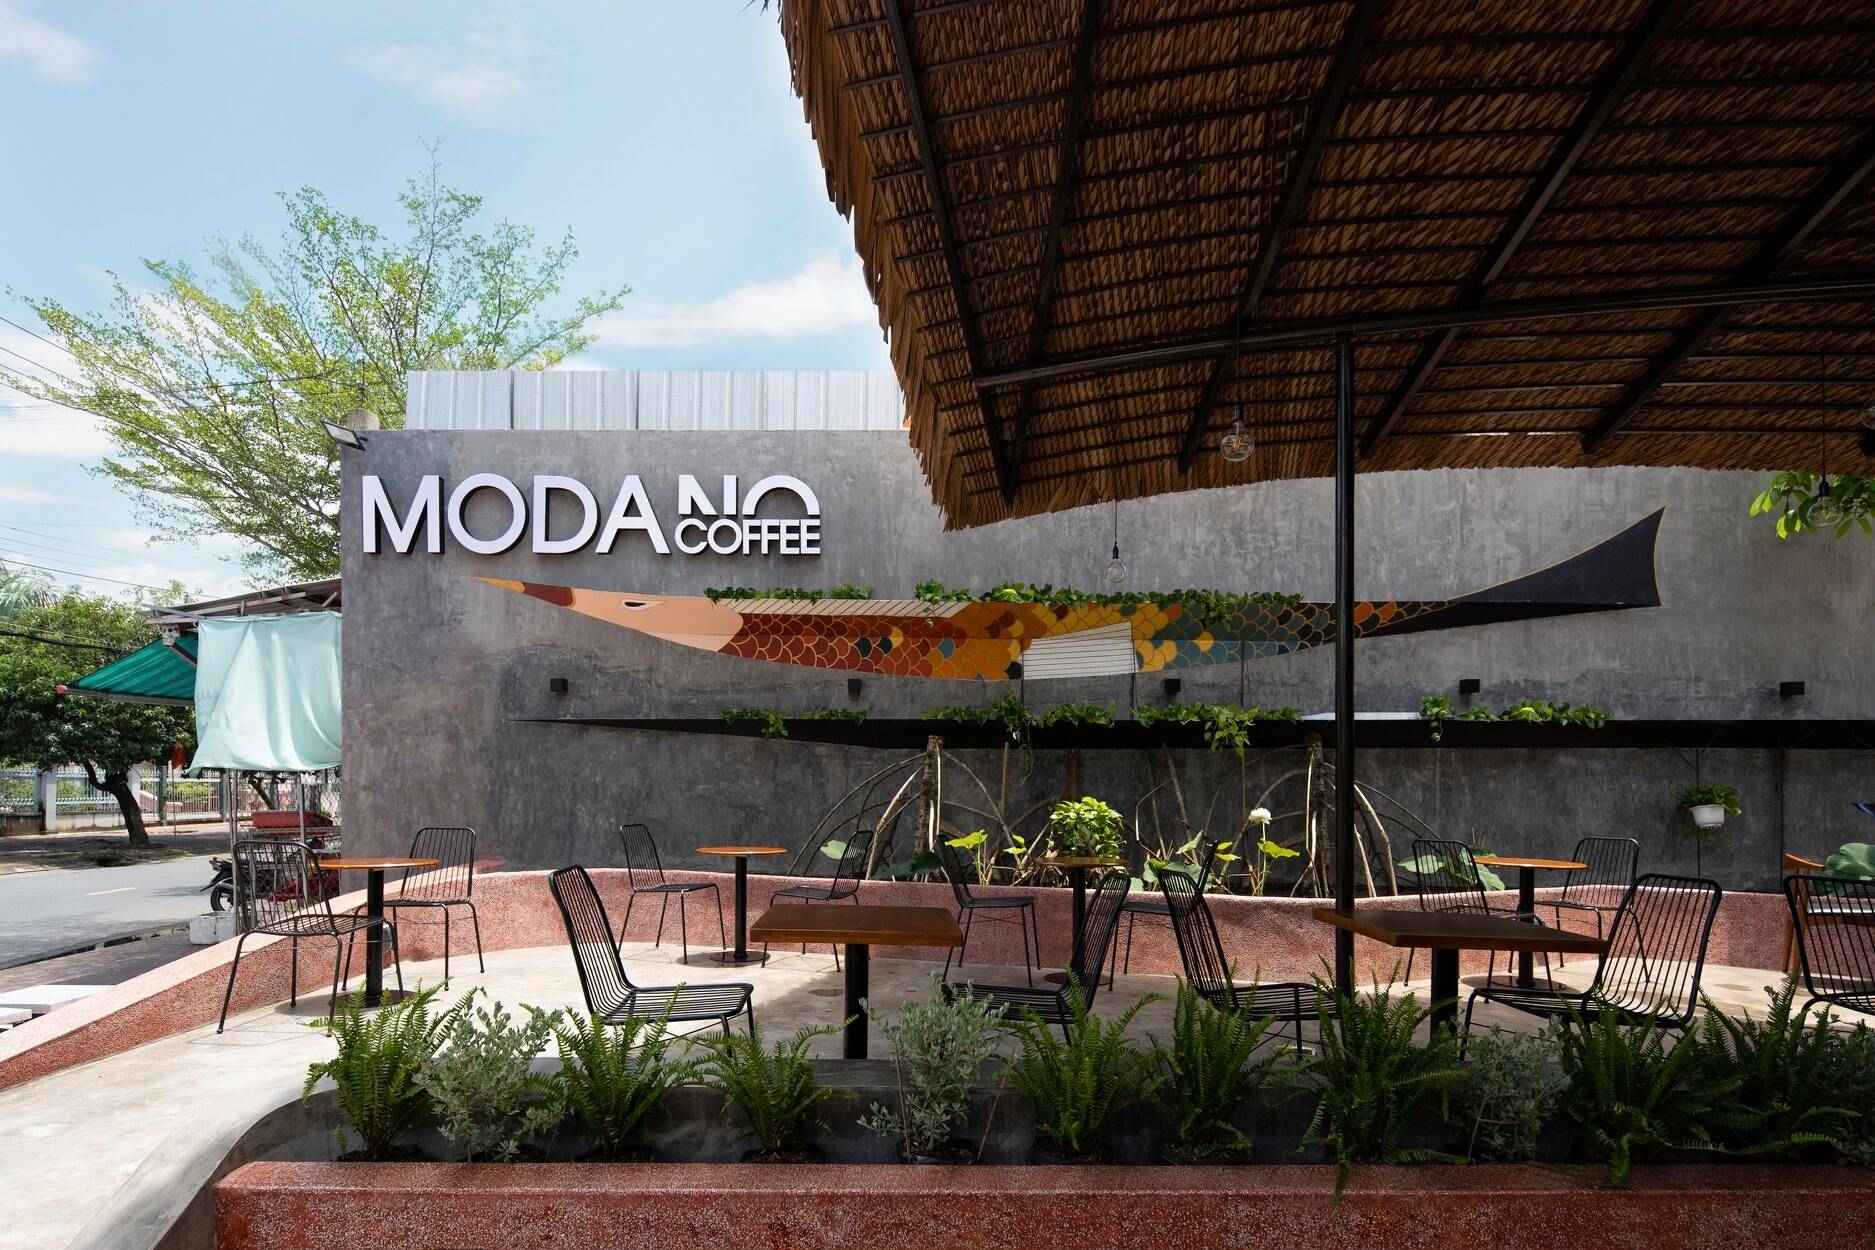 Ghé thăm Modano Coffee - quán cà phê mang kiến trúc bản địa đặc trưng của đồng bằng sông Cửu Long